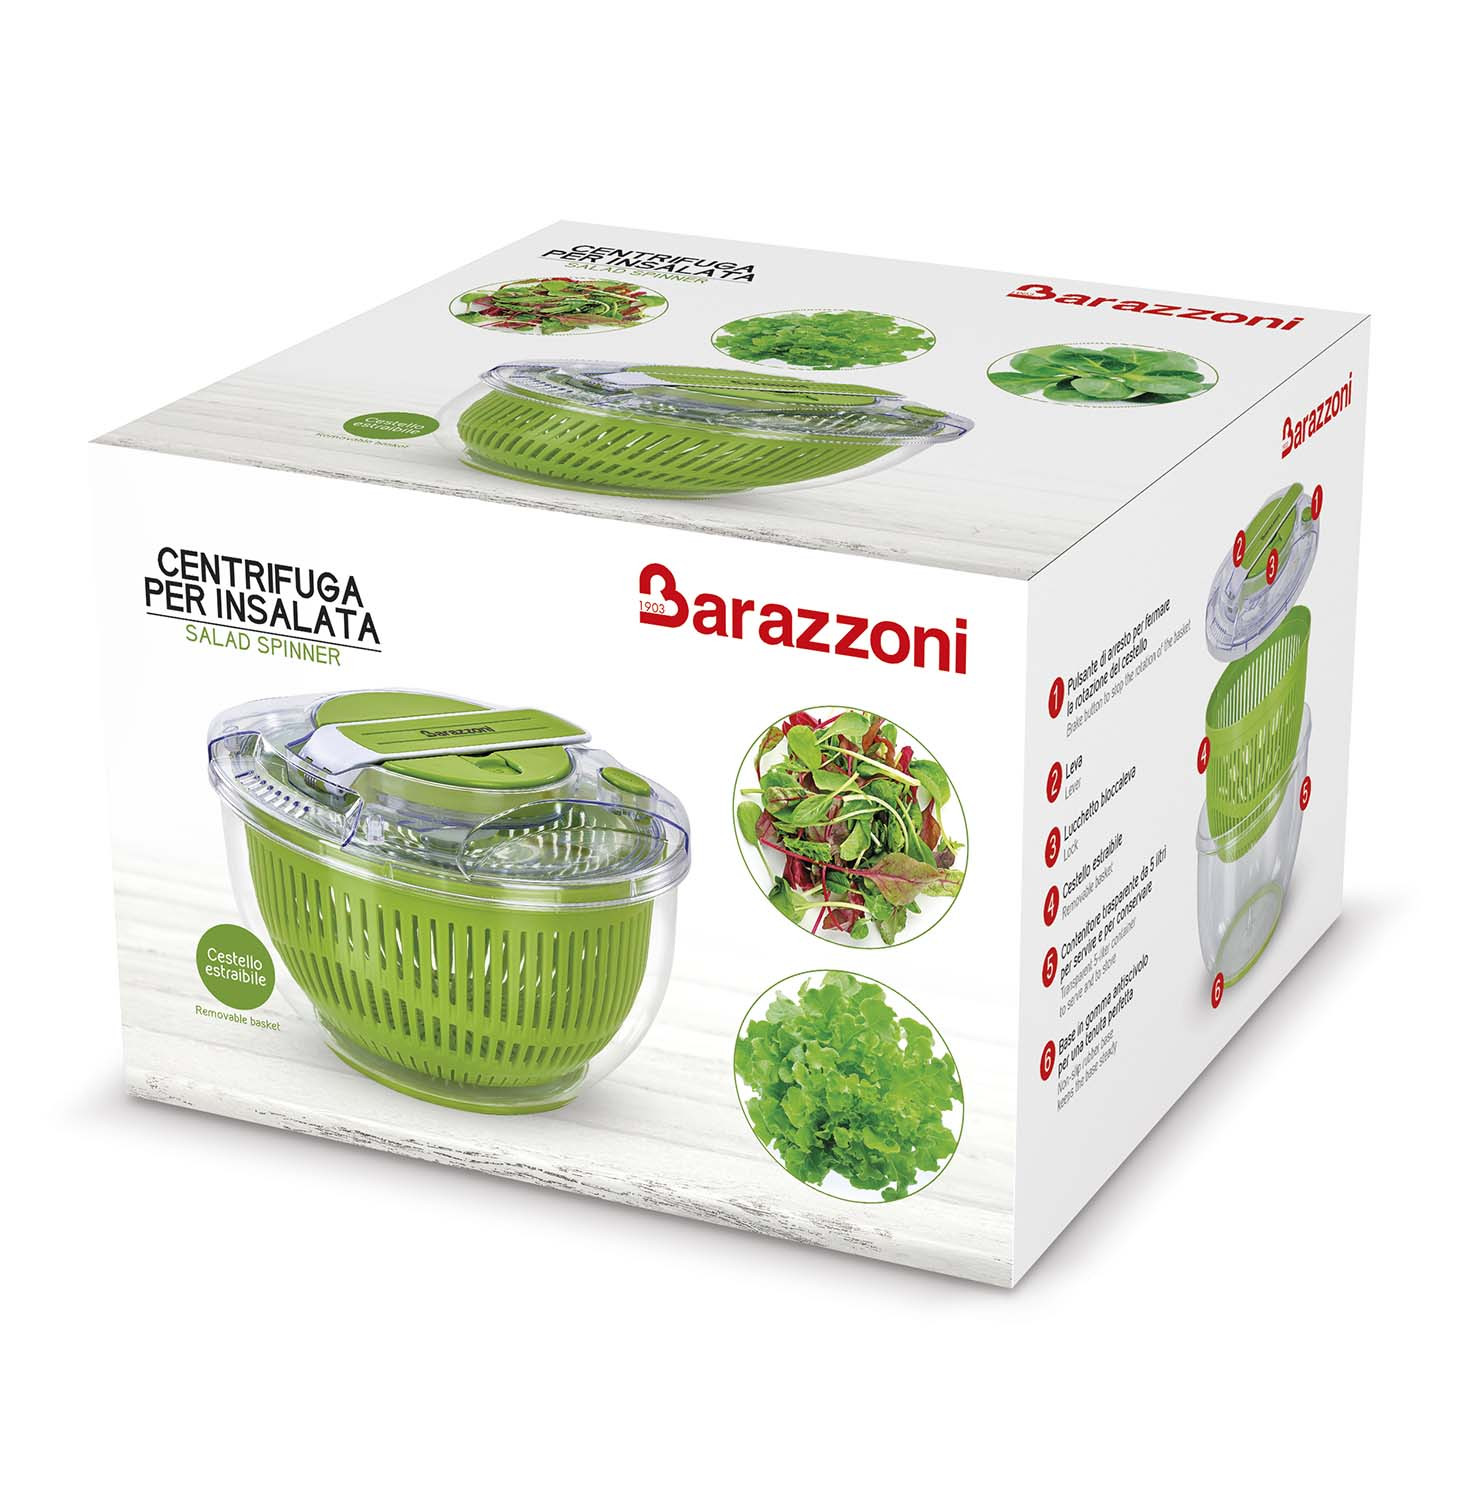 Sammic Centrifughe per insalata ES-200 - Zanoni Group